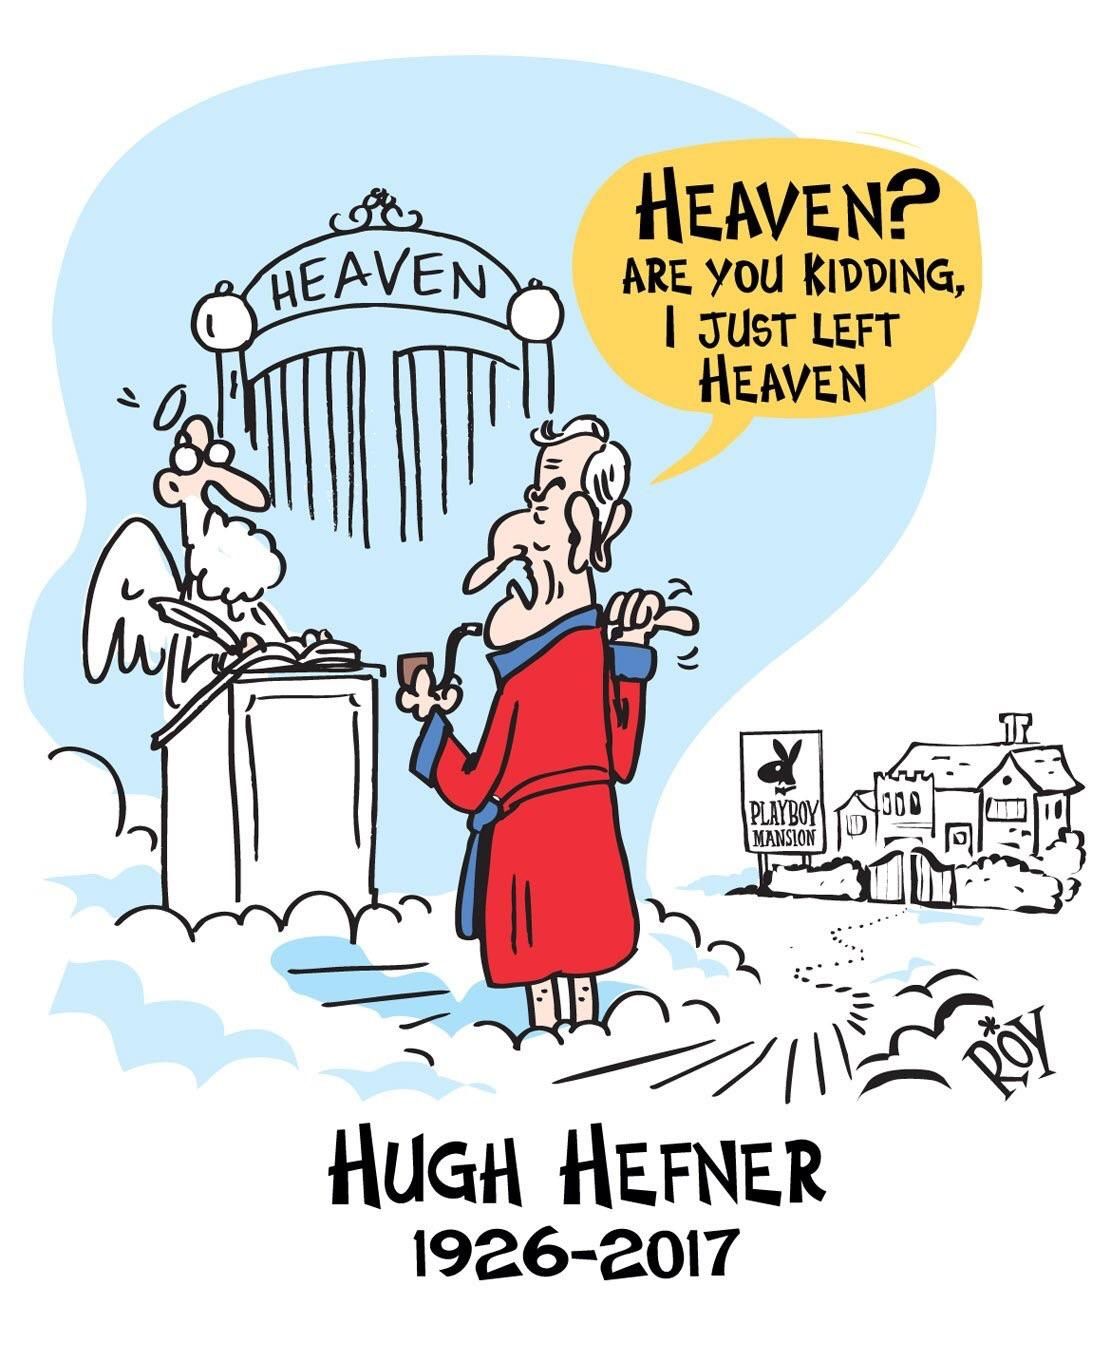 In honour of Hugh Hefner